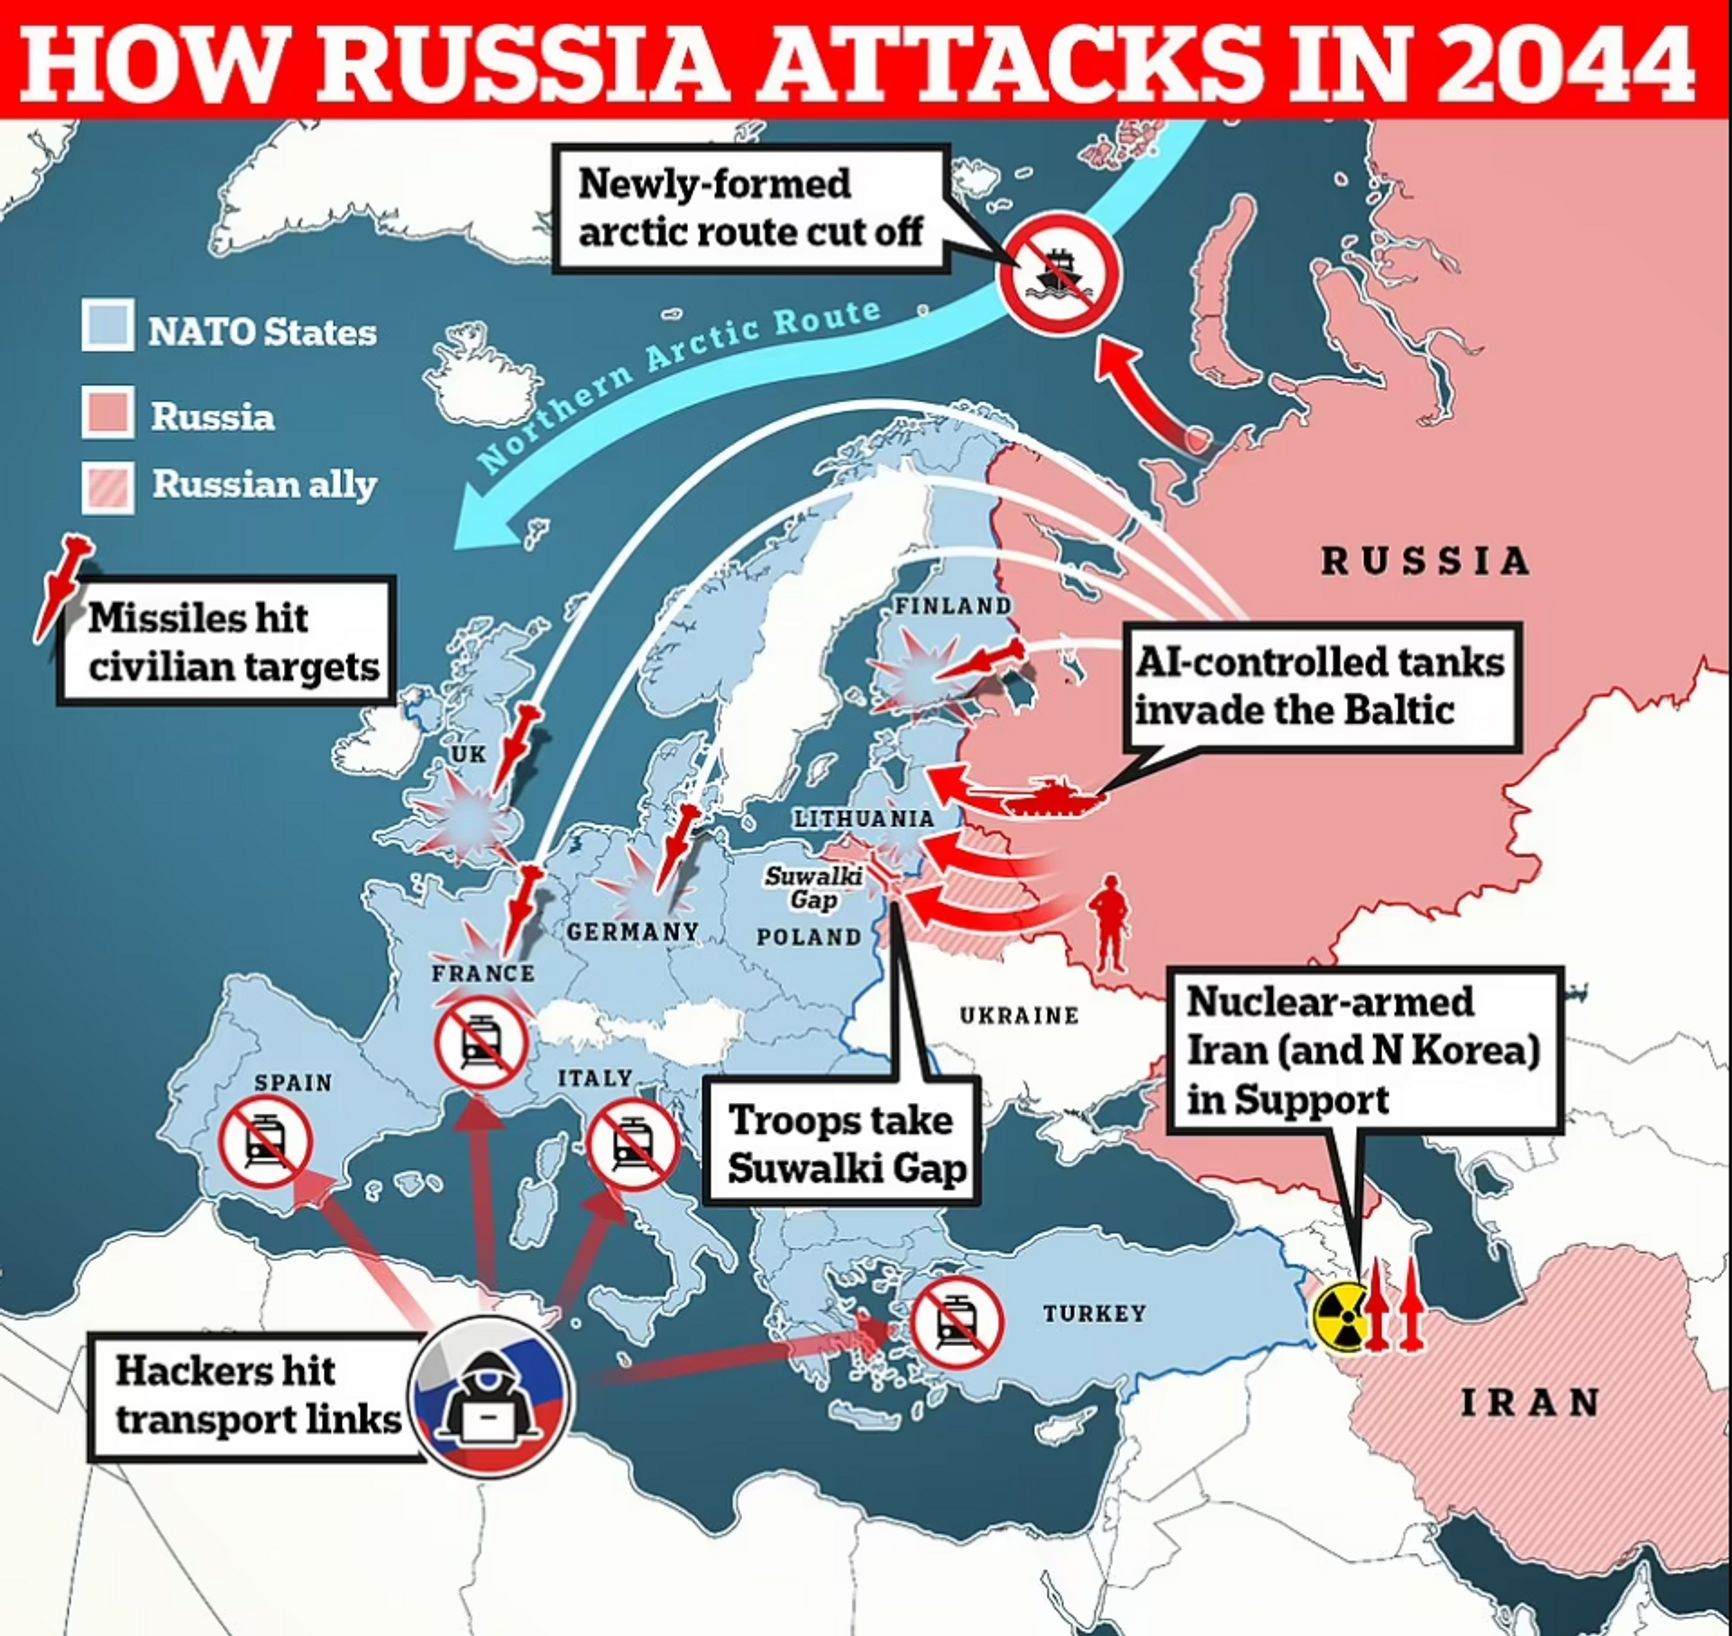 Сценарий войны между Россией и НАТО в Европе в 2044 году по версии Daily Mail